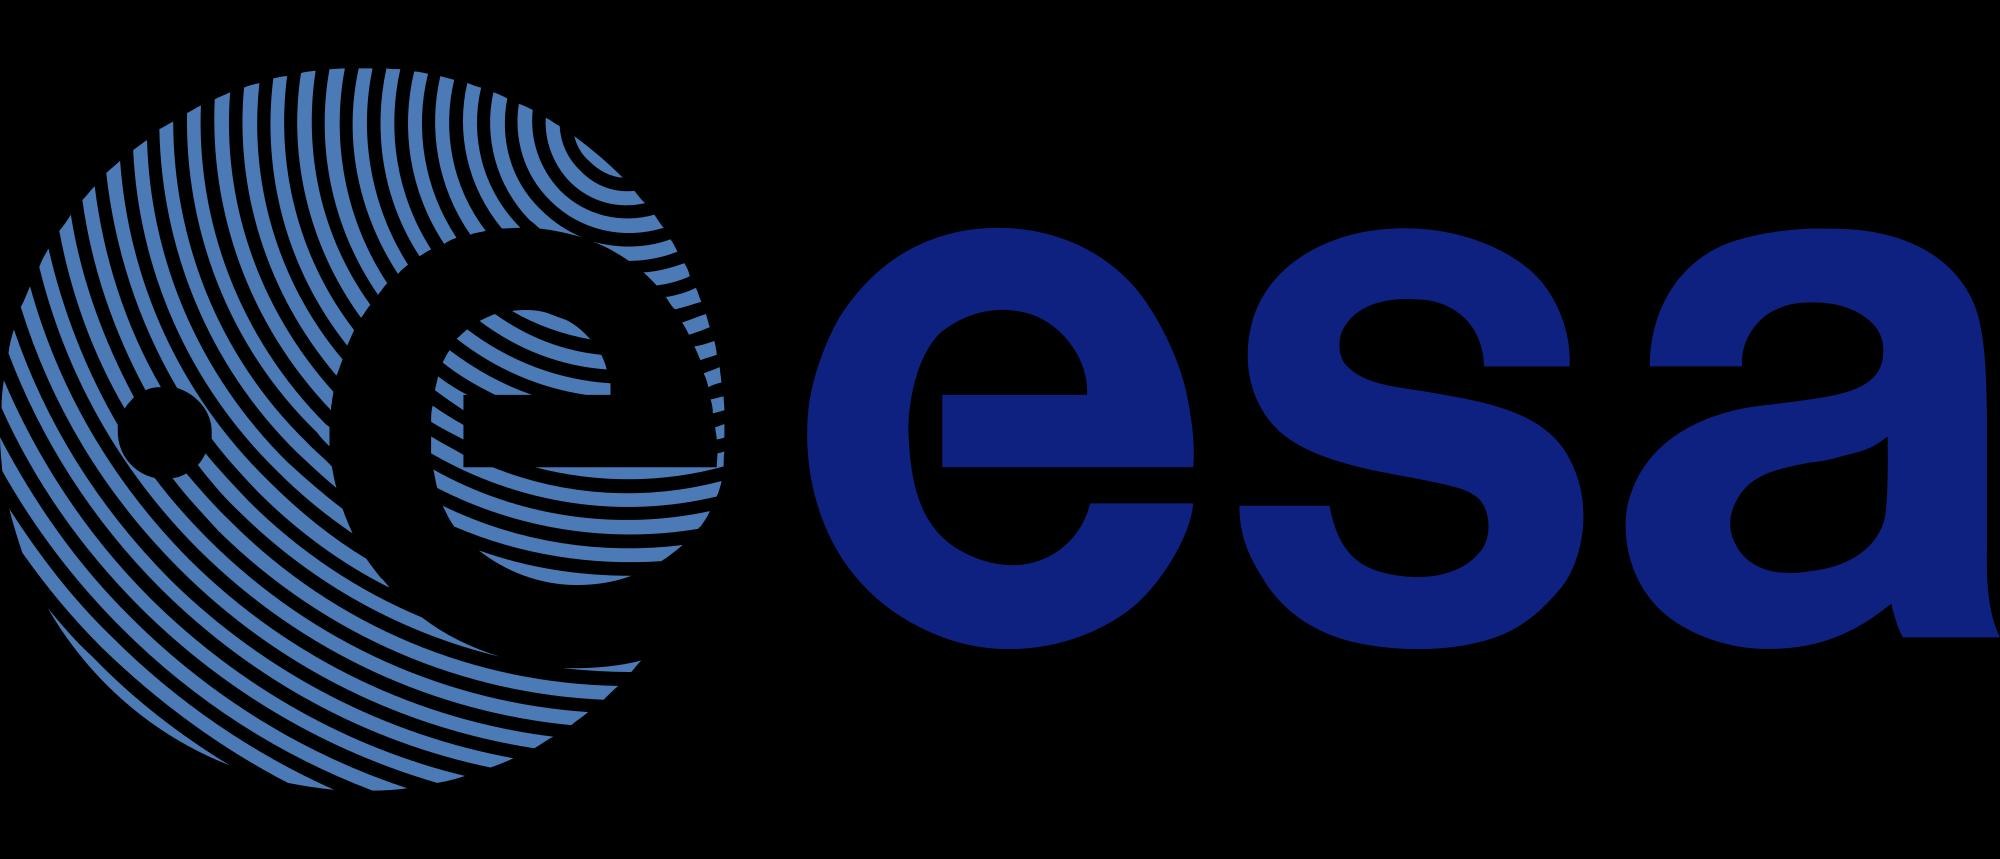 ESA-Logo